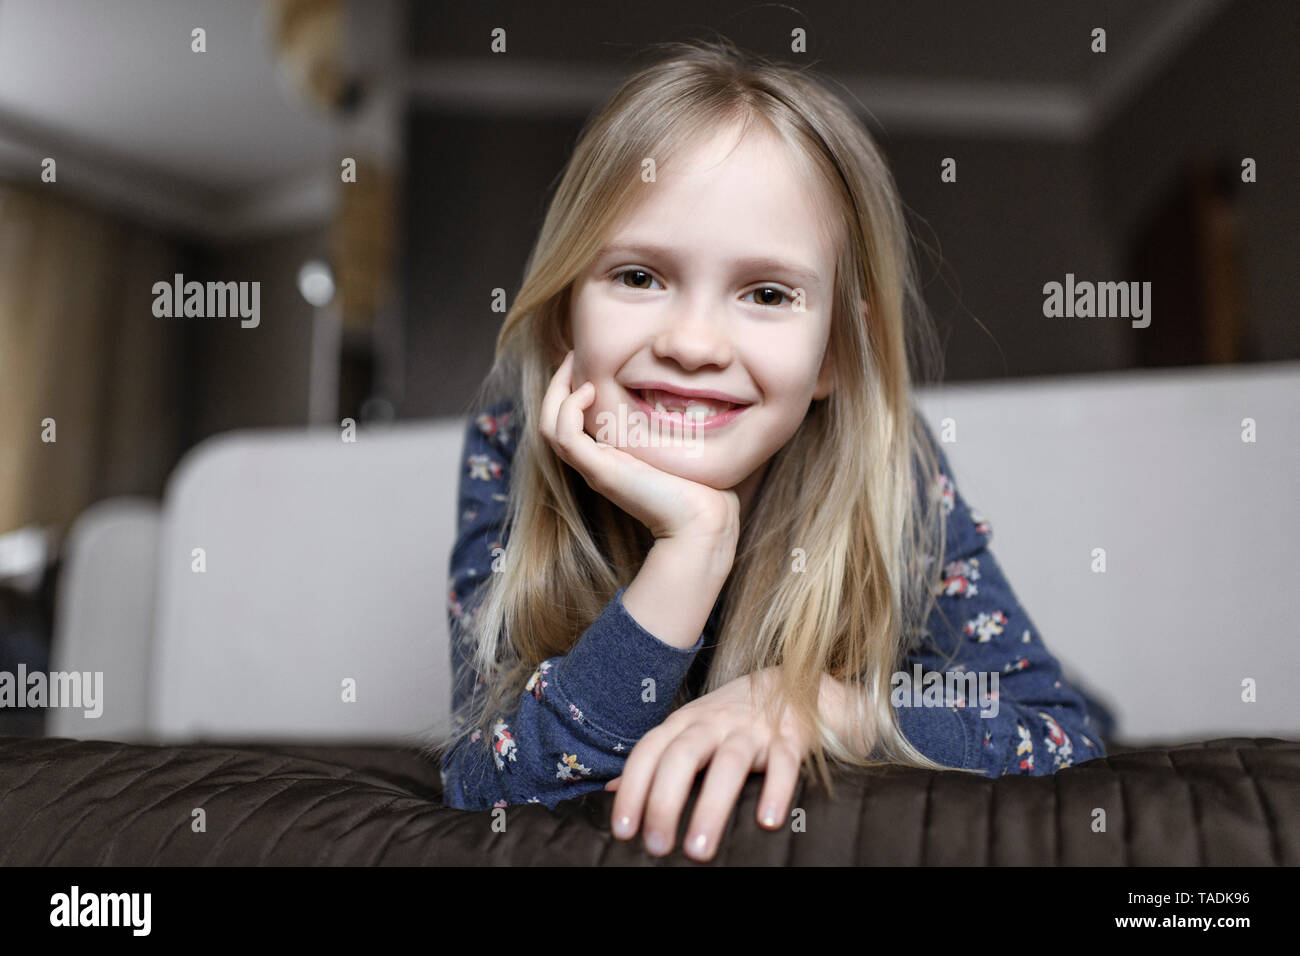 Portrait of smiling little girl avec écart de dent Banque D'Images